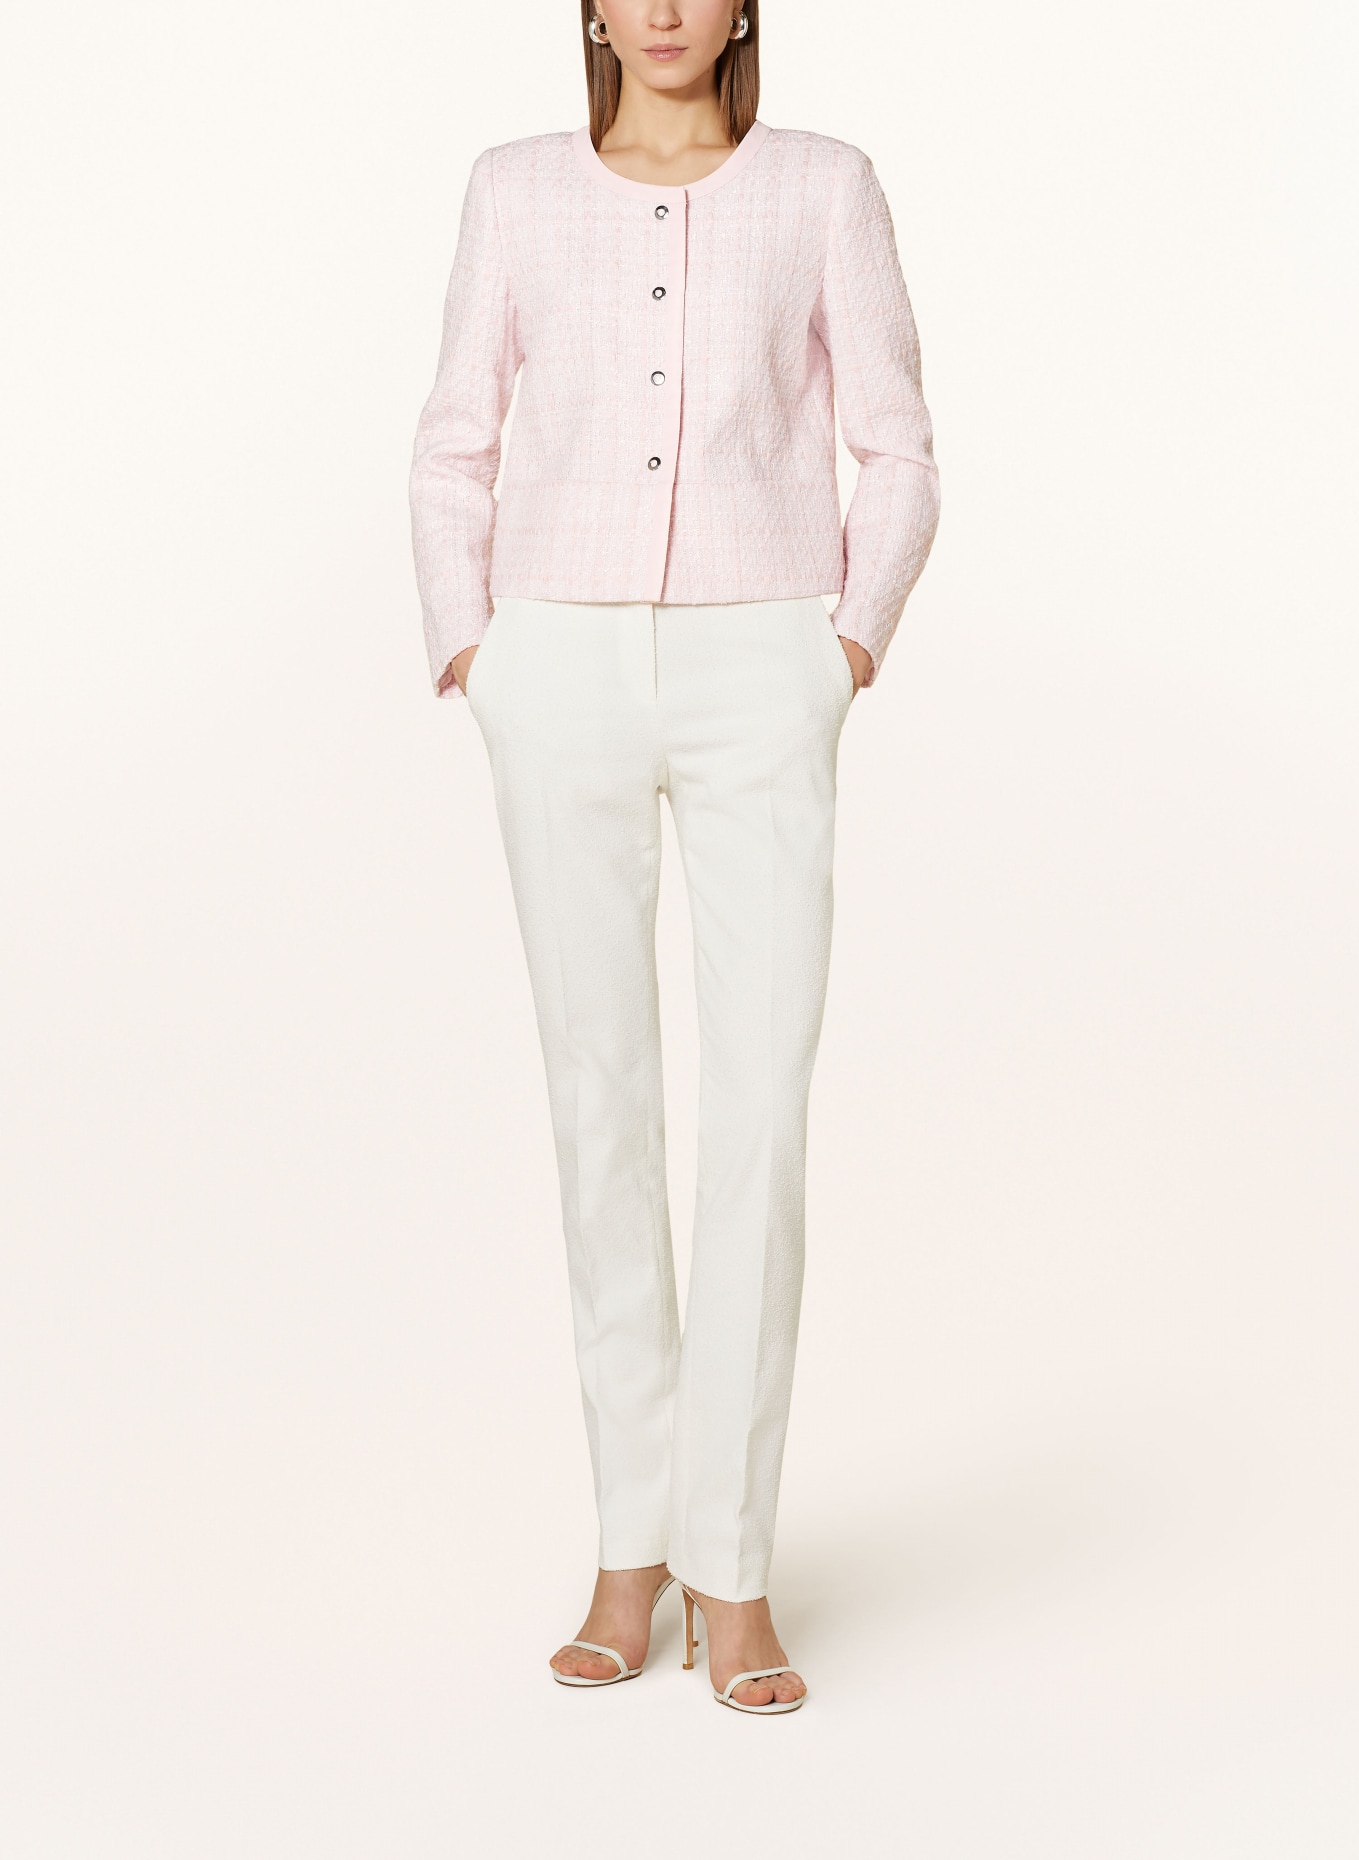 EMPORIO ARMANI Tweed blazer, Color: LIGHT PINK (Image 2)